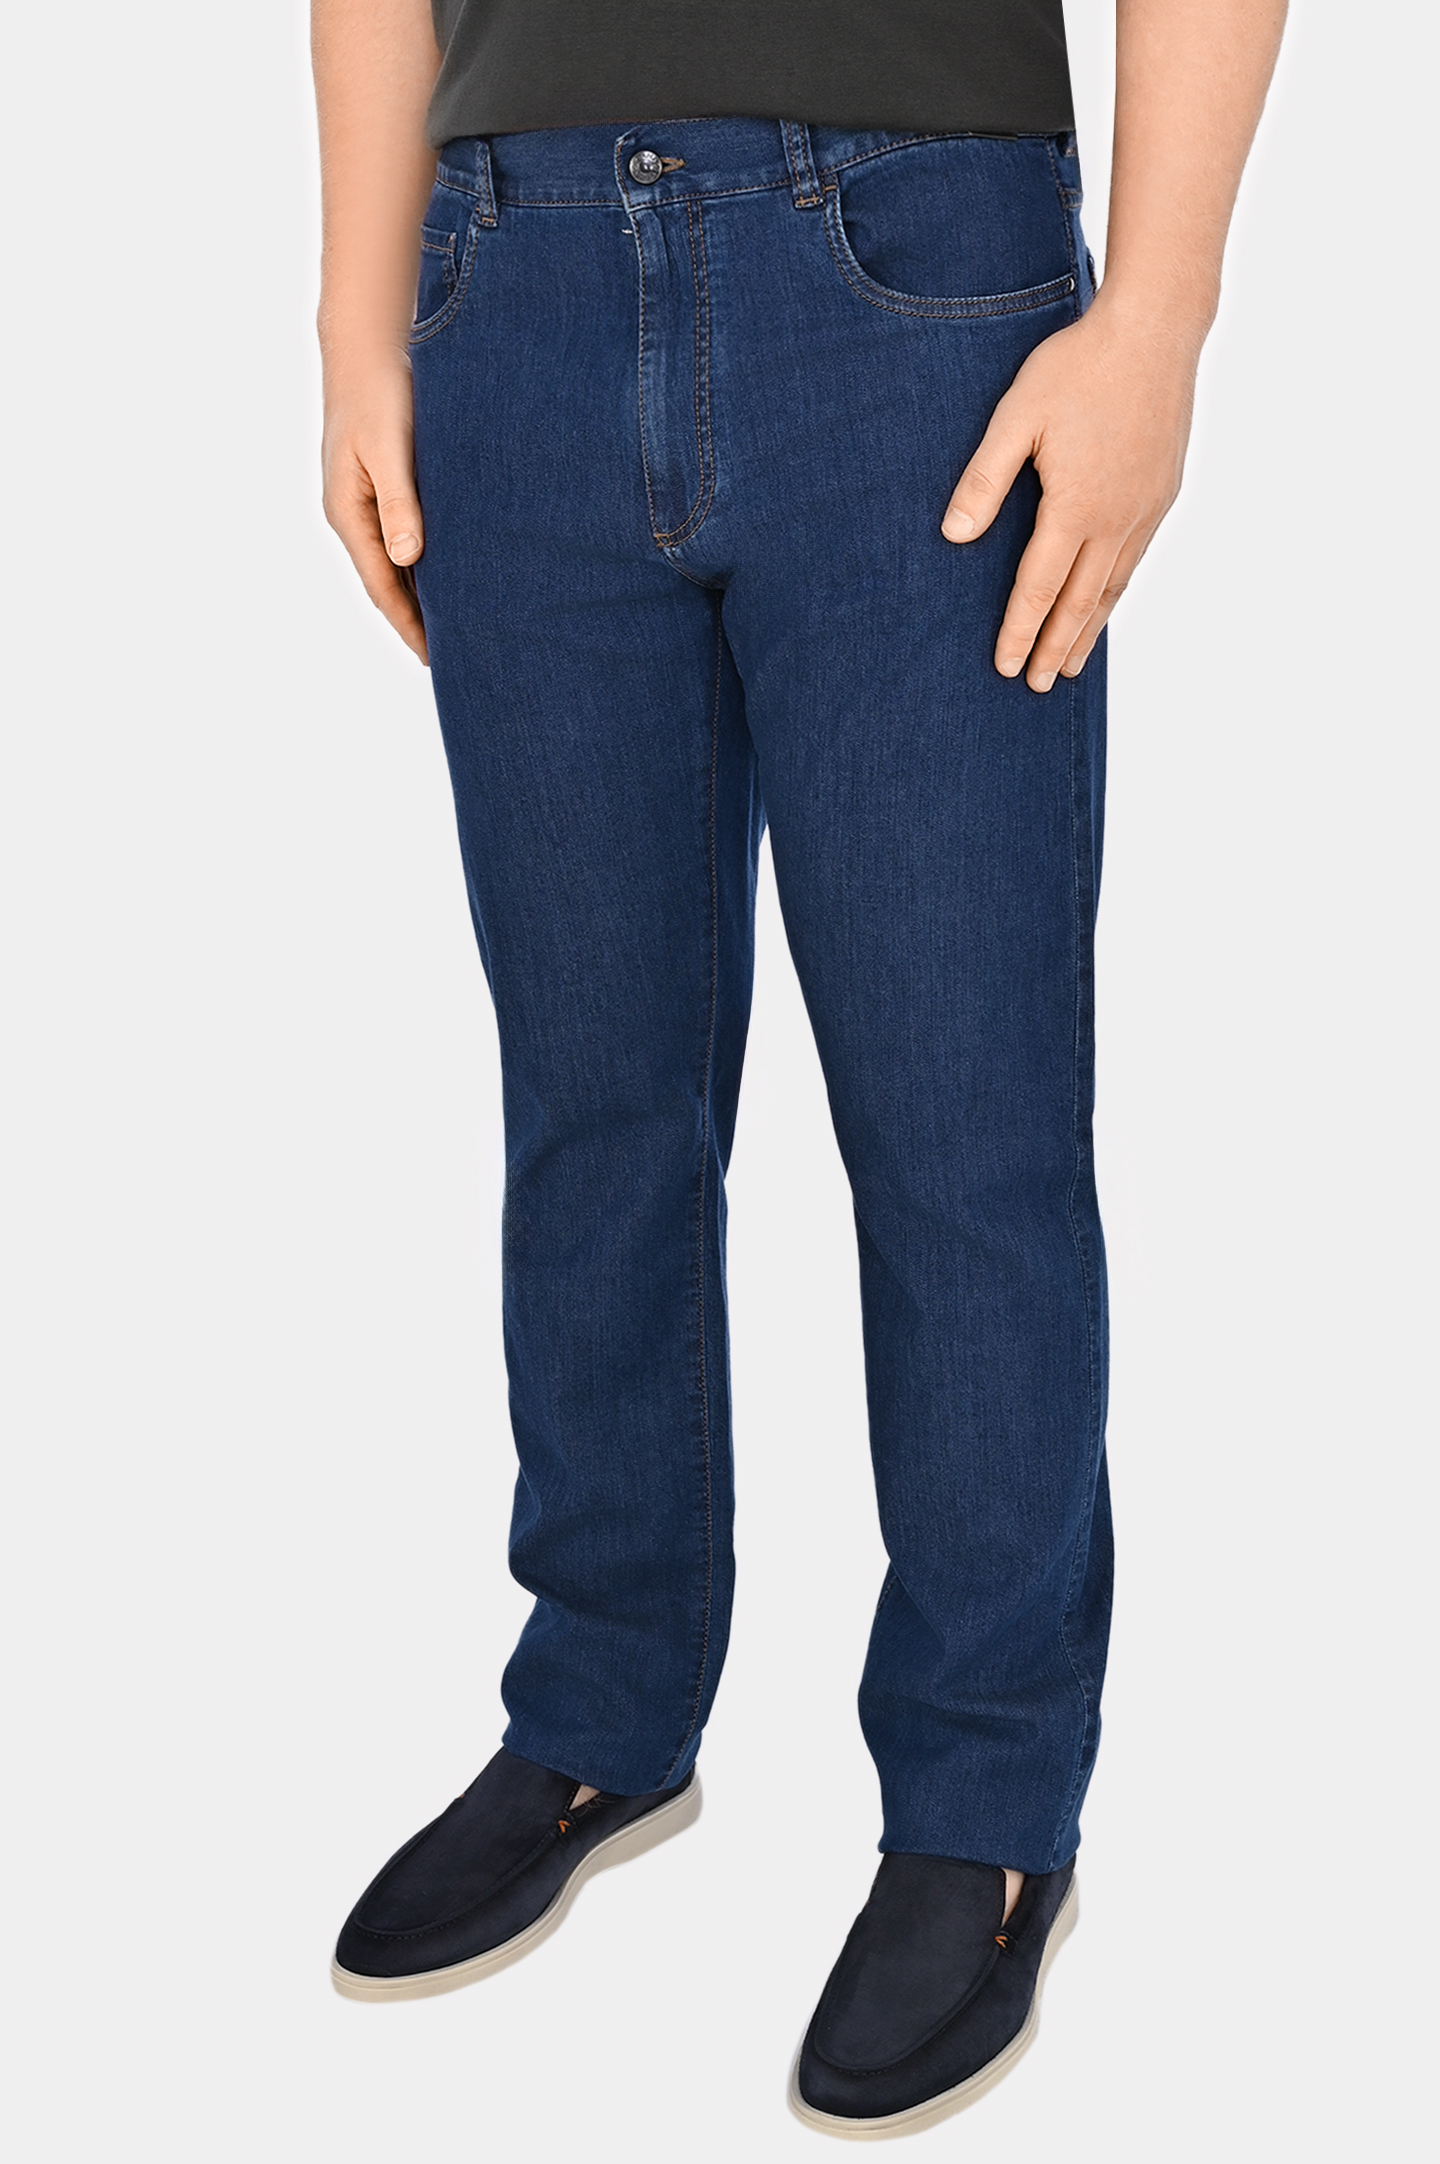 Прямые базовые джинсы CANALI PD00400 91700/1, цвет: Синий, Мужской